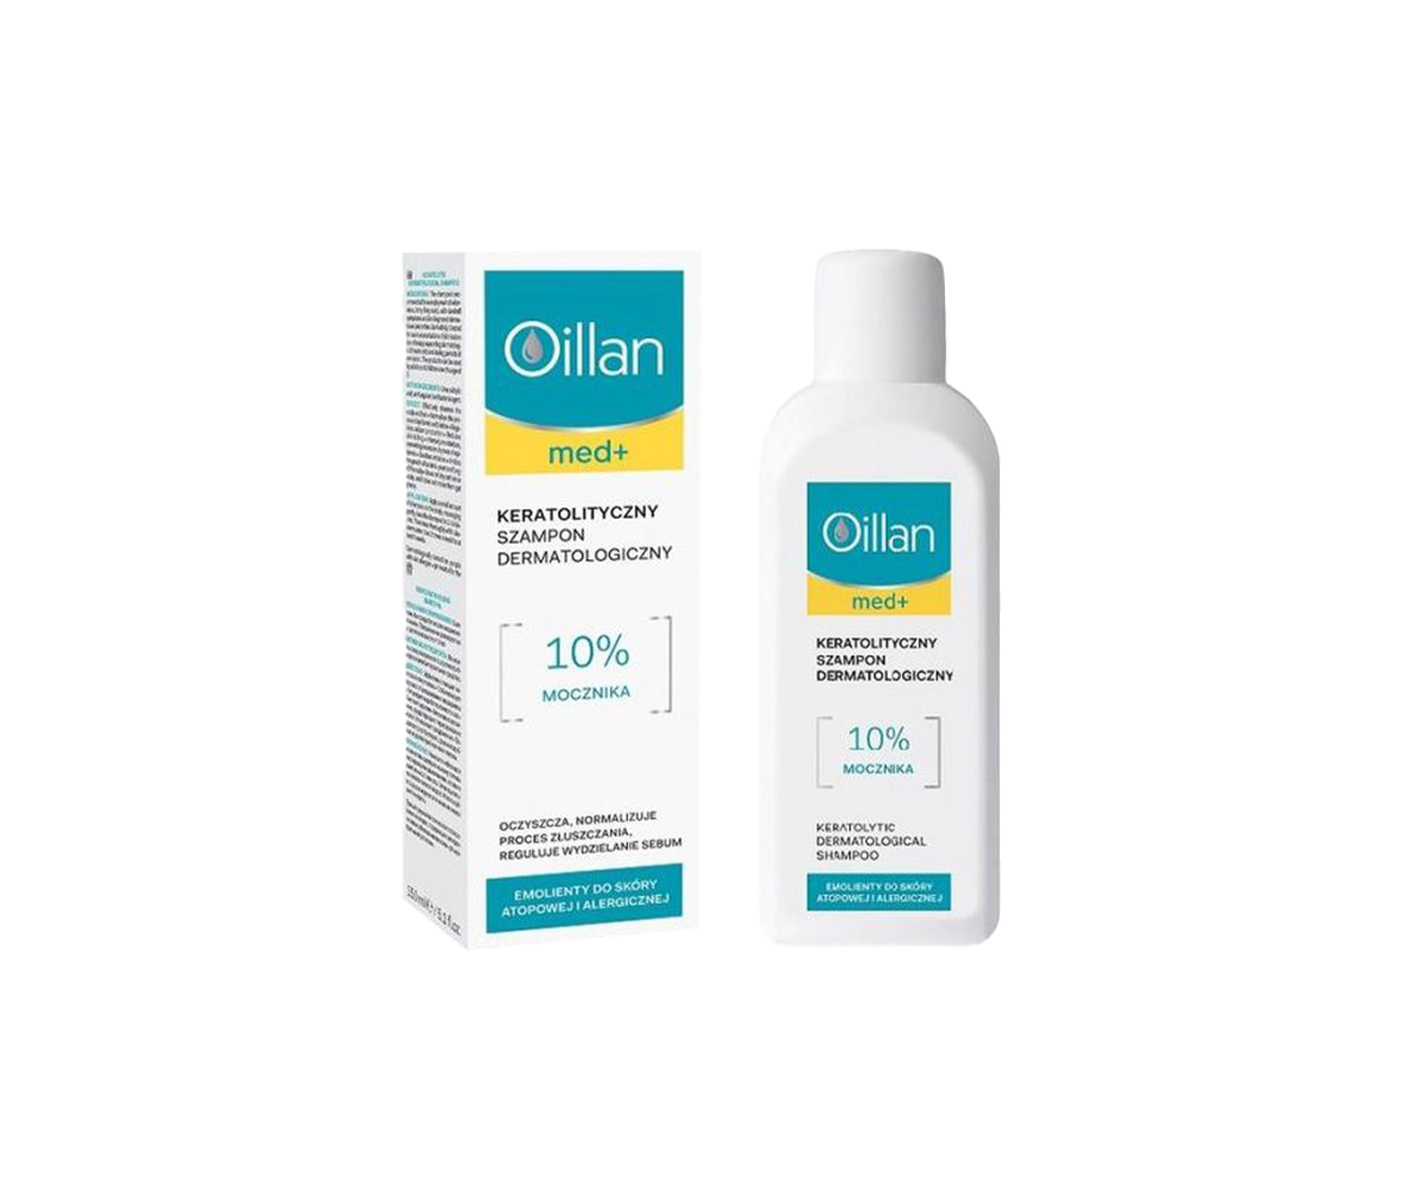 Oillan, Med+, keratoliczny szampon dermatologiczny